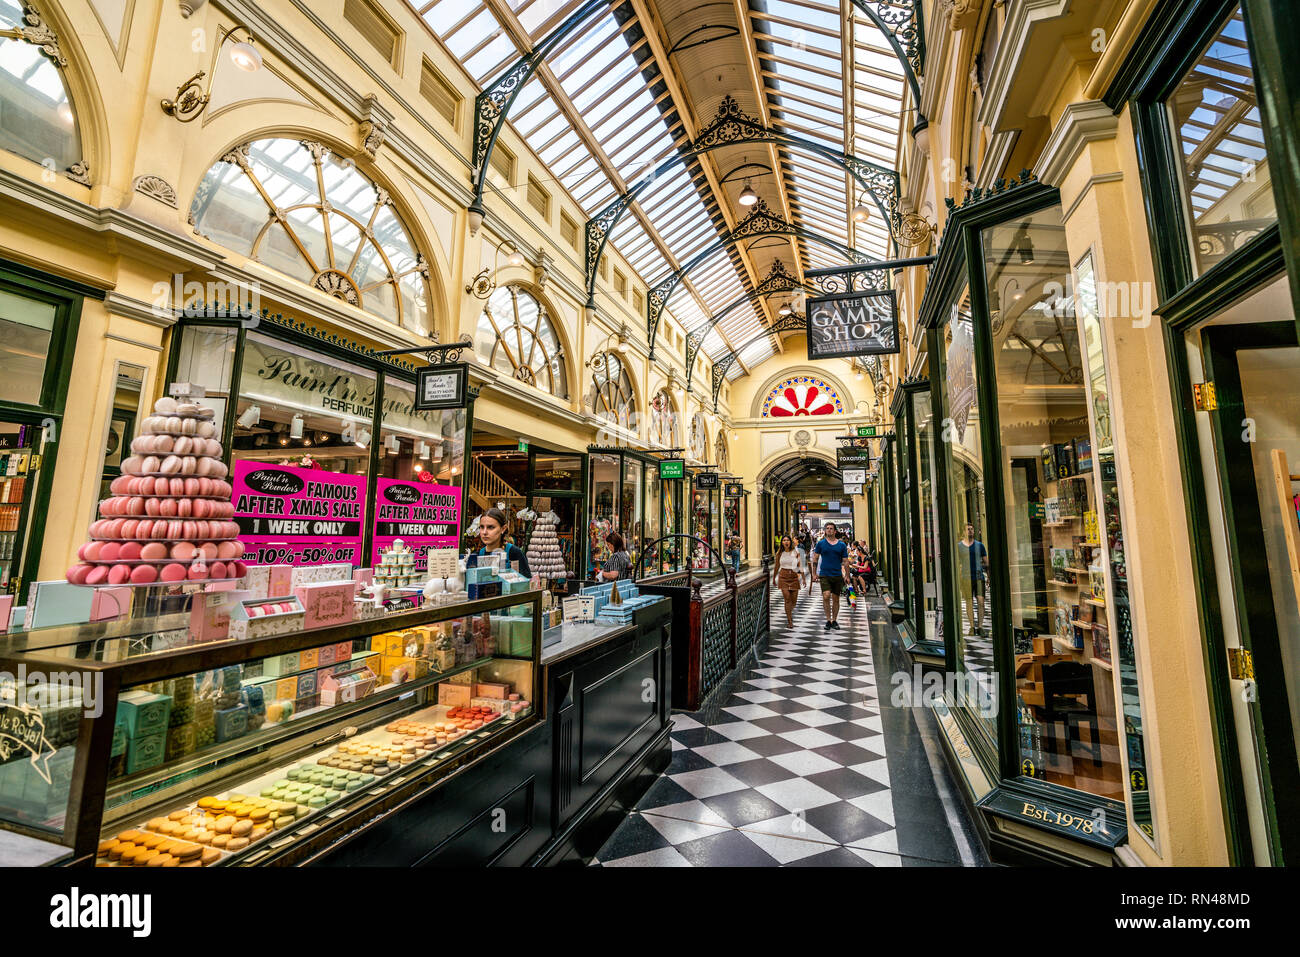 El 3 de enero de 2019, Melbourne, Australia : vista interior de la Royal Arcade con Macaron tienda en Melbourne Australia Foto de stock